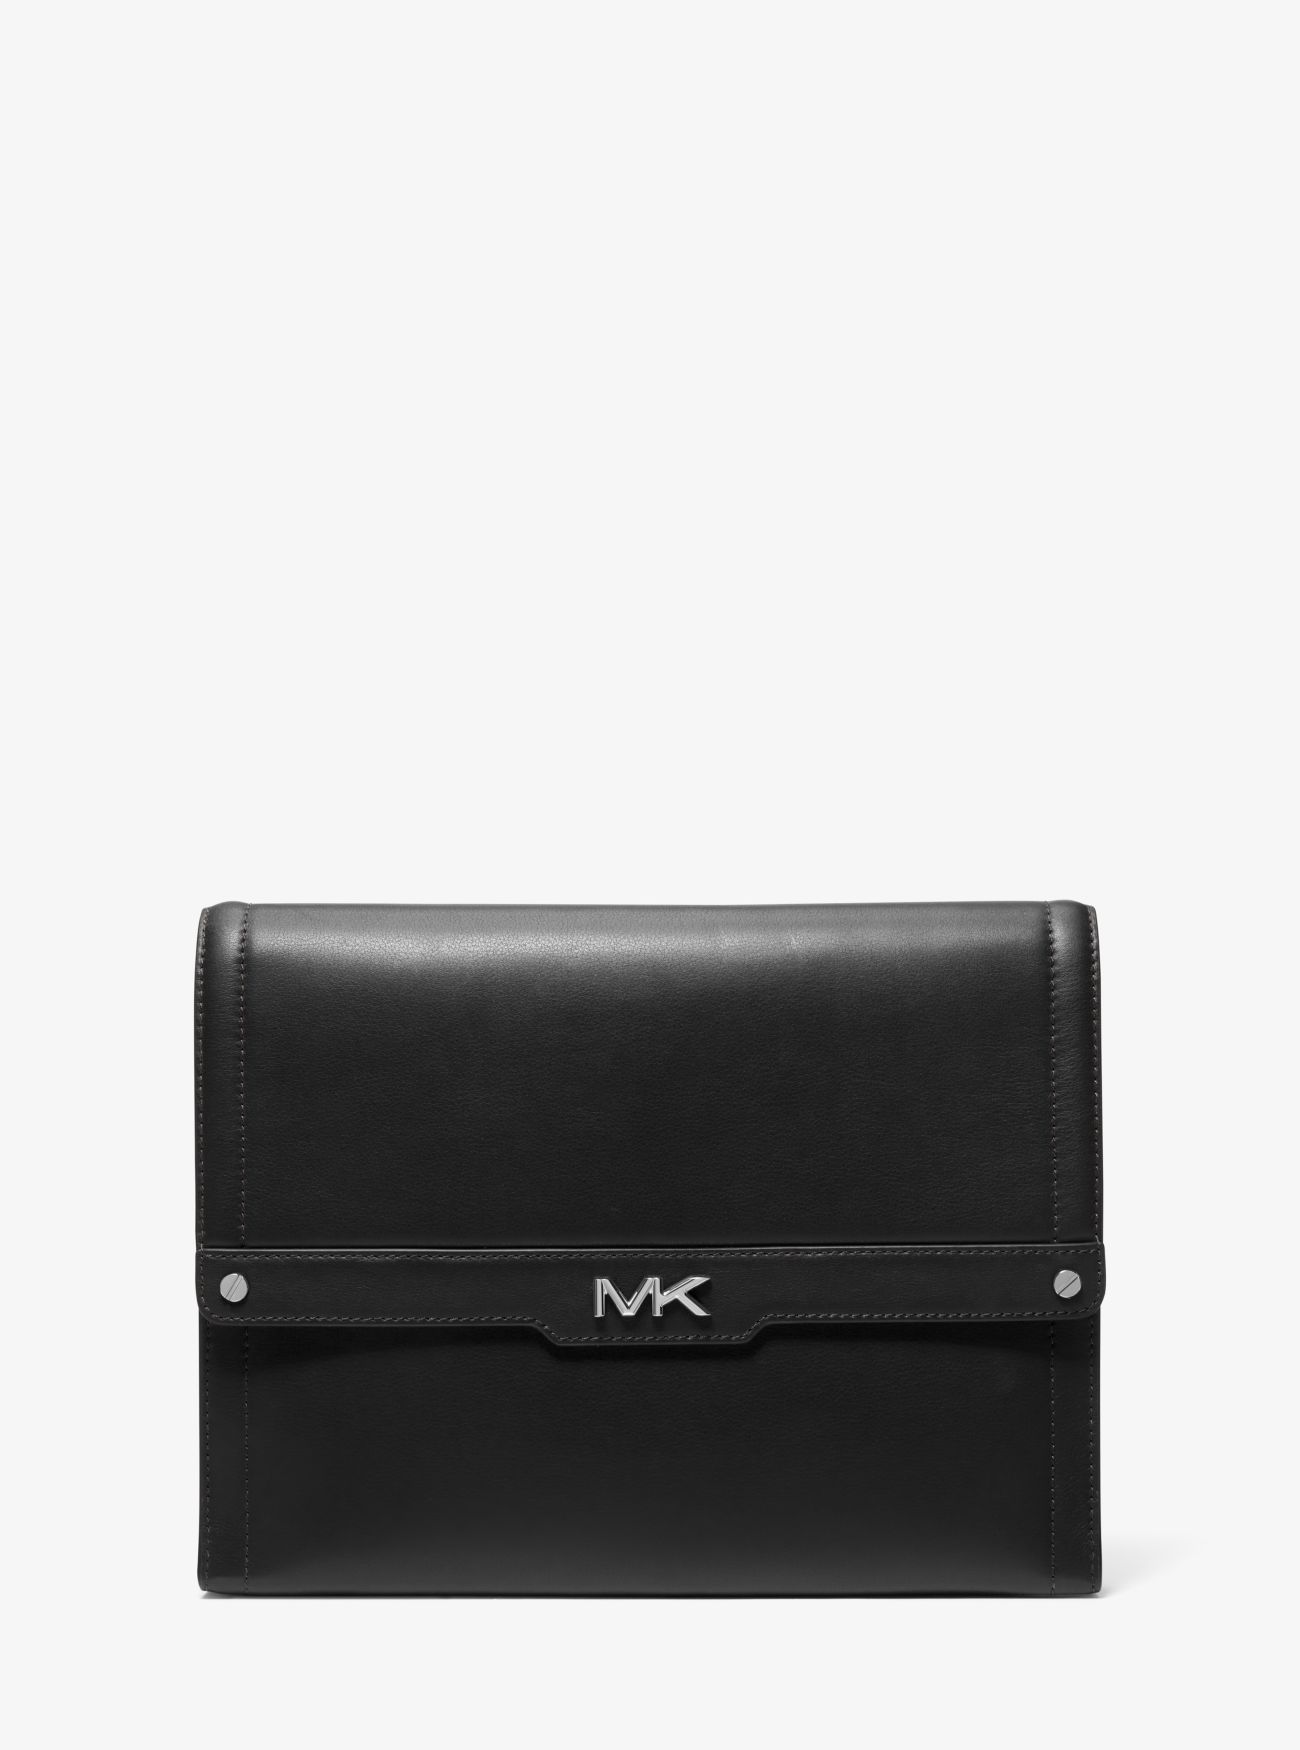 MK Varick Leather Document Holder - Black - Michael Kors